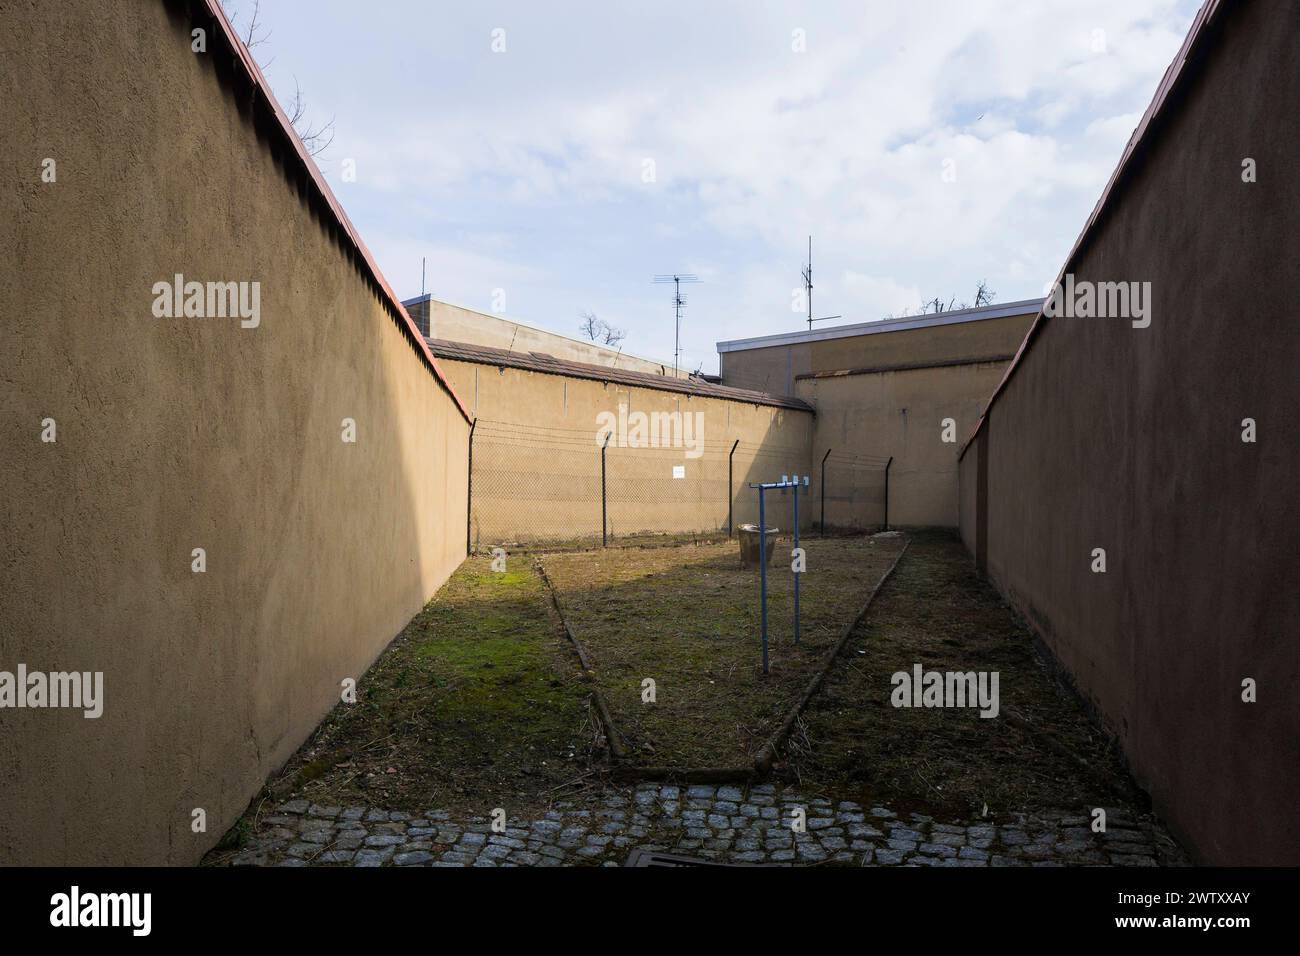 Bautzen Stasi Knast Gedenkstätte IM sächsischen Bautzen gab es historisch zwei Gefängnisse, die heute insbesondere für Unrecht und politische Verfolgung in der Sowjetischen Besatzungszone und in der DDR bekannt sind. Zwischen 1902 und 1906 wurde an der Lessingstraße in der Bautzener Ostvorstadt ein großzügiges neues Gerichtsgebäude errichtet, dem ein Vollzugskomplex angeschlossen War. Dieser umfasste 134 Einzel-, 23 Dreimann-, 2 Durchgangs-, 4 Kranken- e 5 Arrestzellen. Von 1945 bis 1949 diente es der sowjetischen Militärverwaltung als Untersuchungsgefängnis, von wo aus die Verurteilten dire Foto Stock